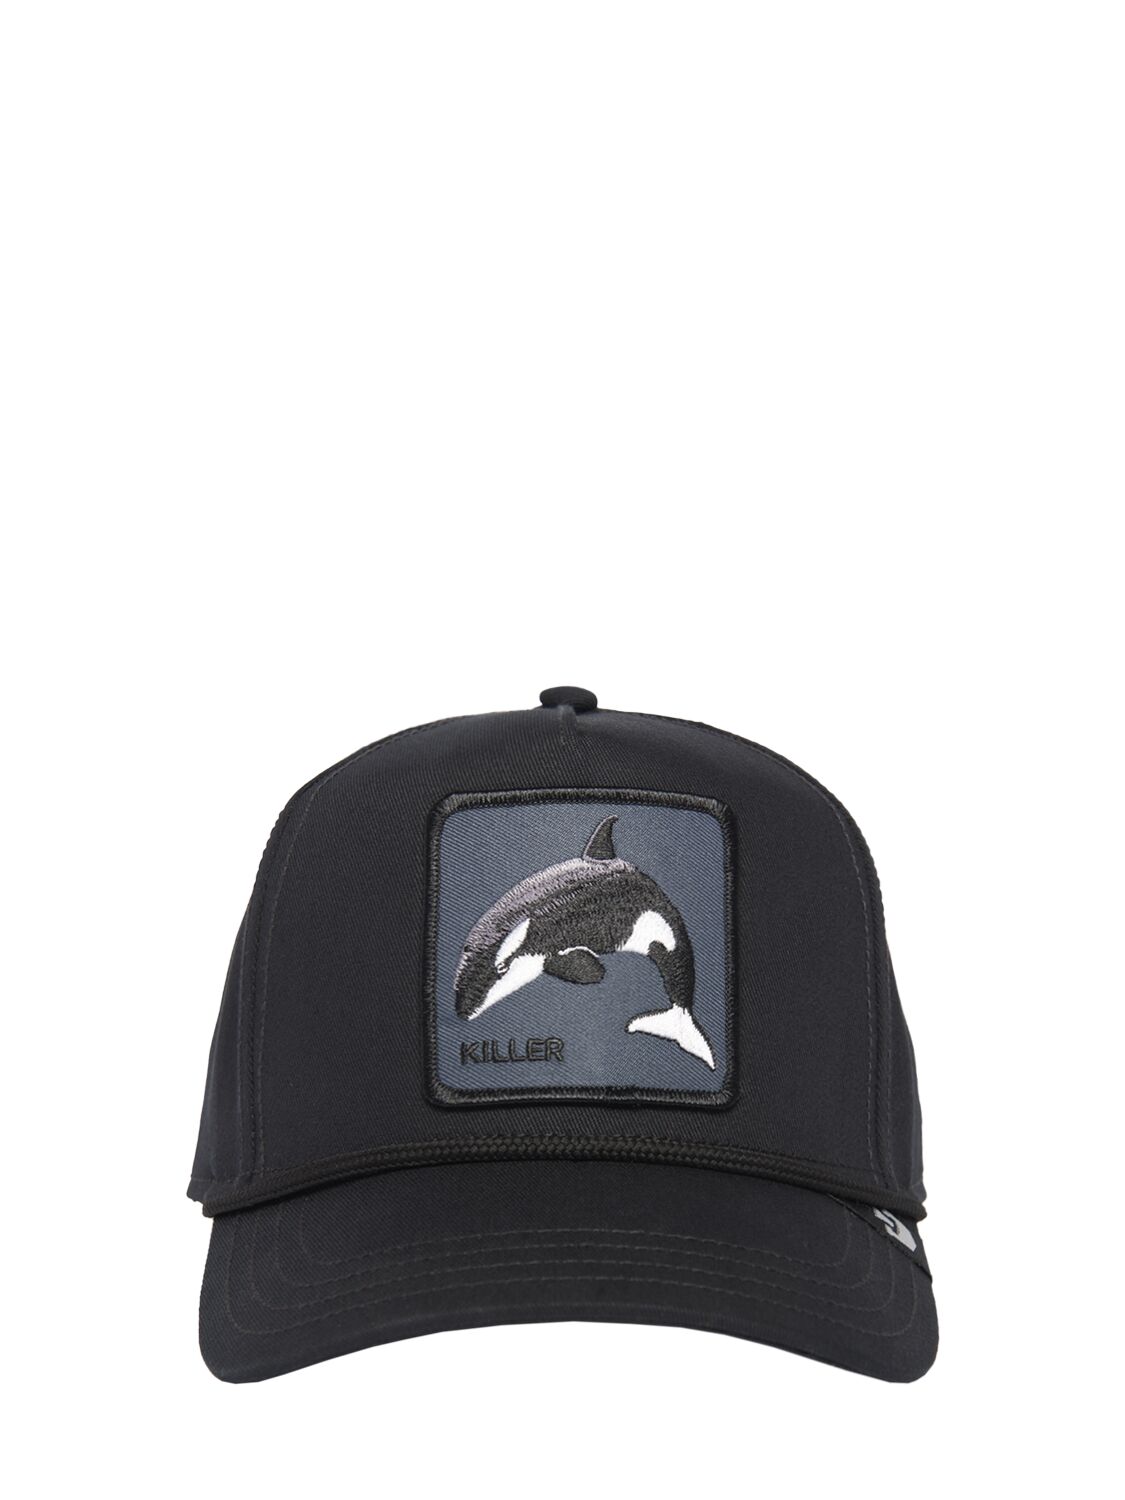 Killer Whale 100 Baseball Cap